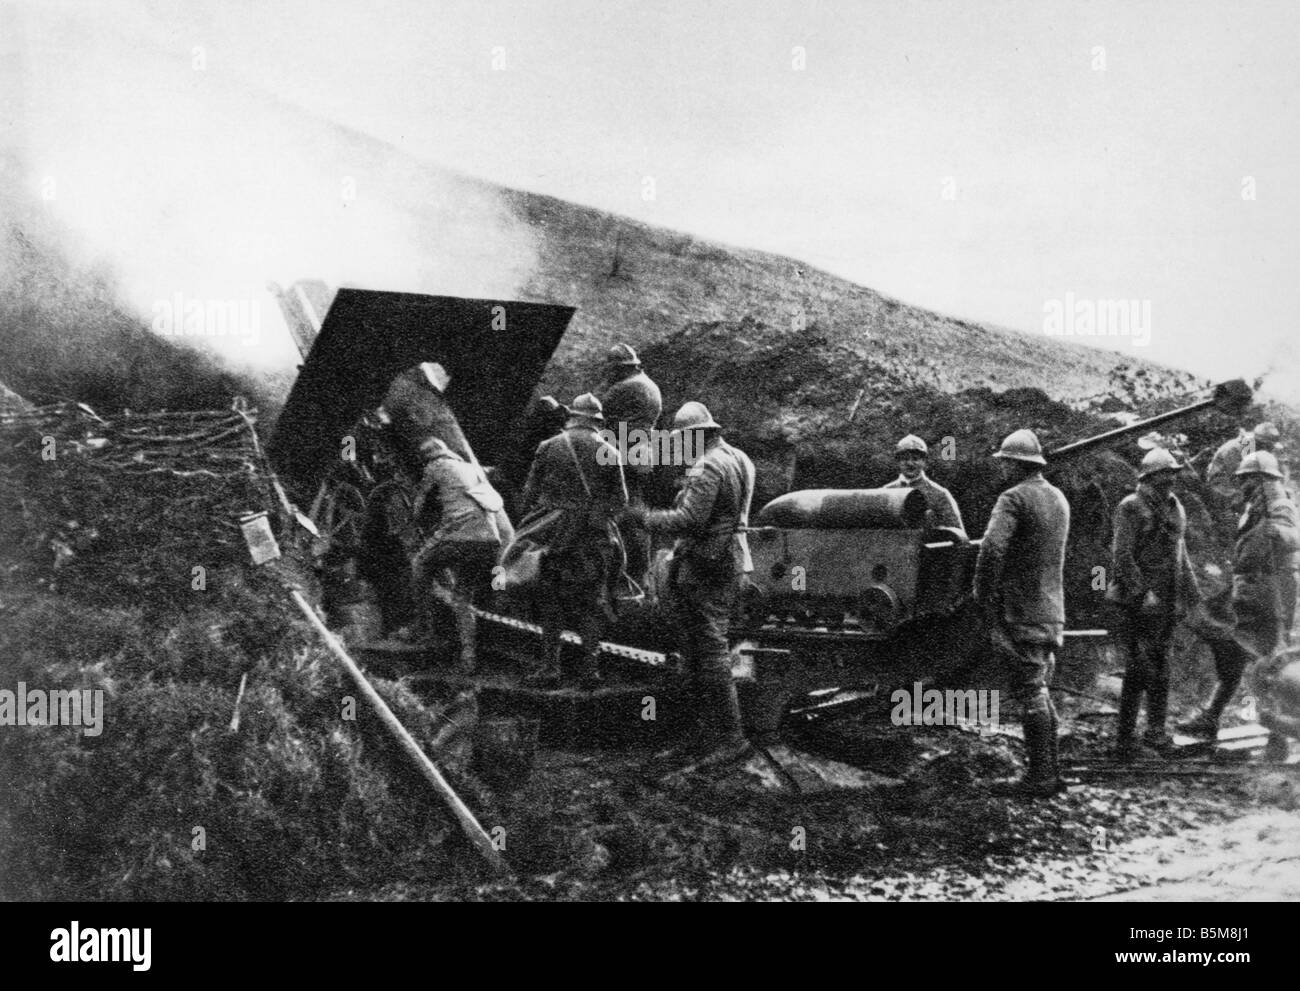 2 G55 F1 1918 7 WW1 Francia artiglieria francese 1918 Storia Guerra Mondiale uno francese durante la Battaglia di Aspach artiglieria francese vigore Foto Stock